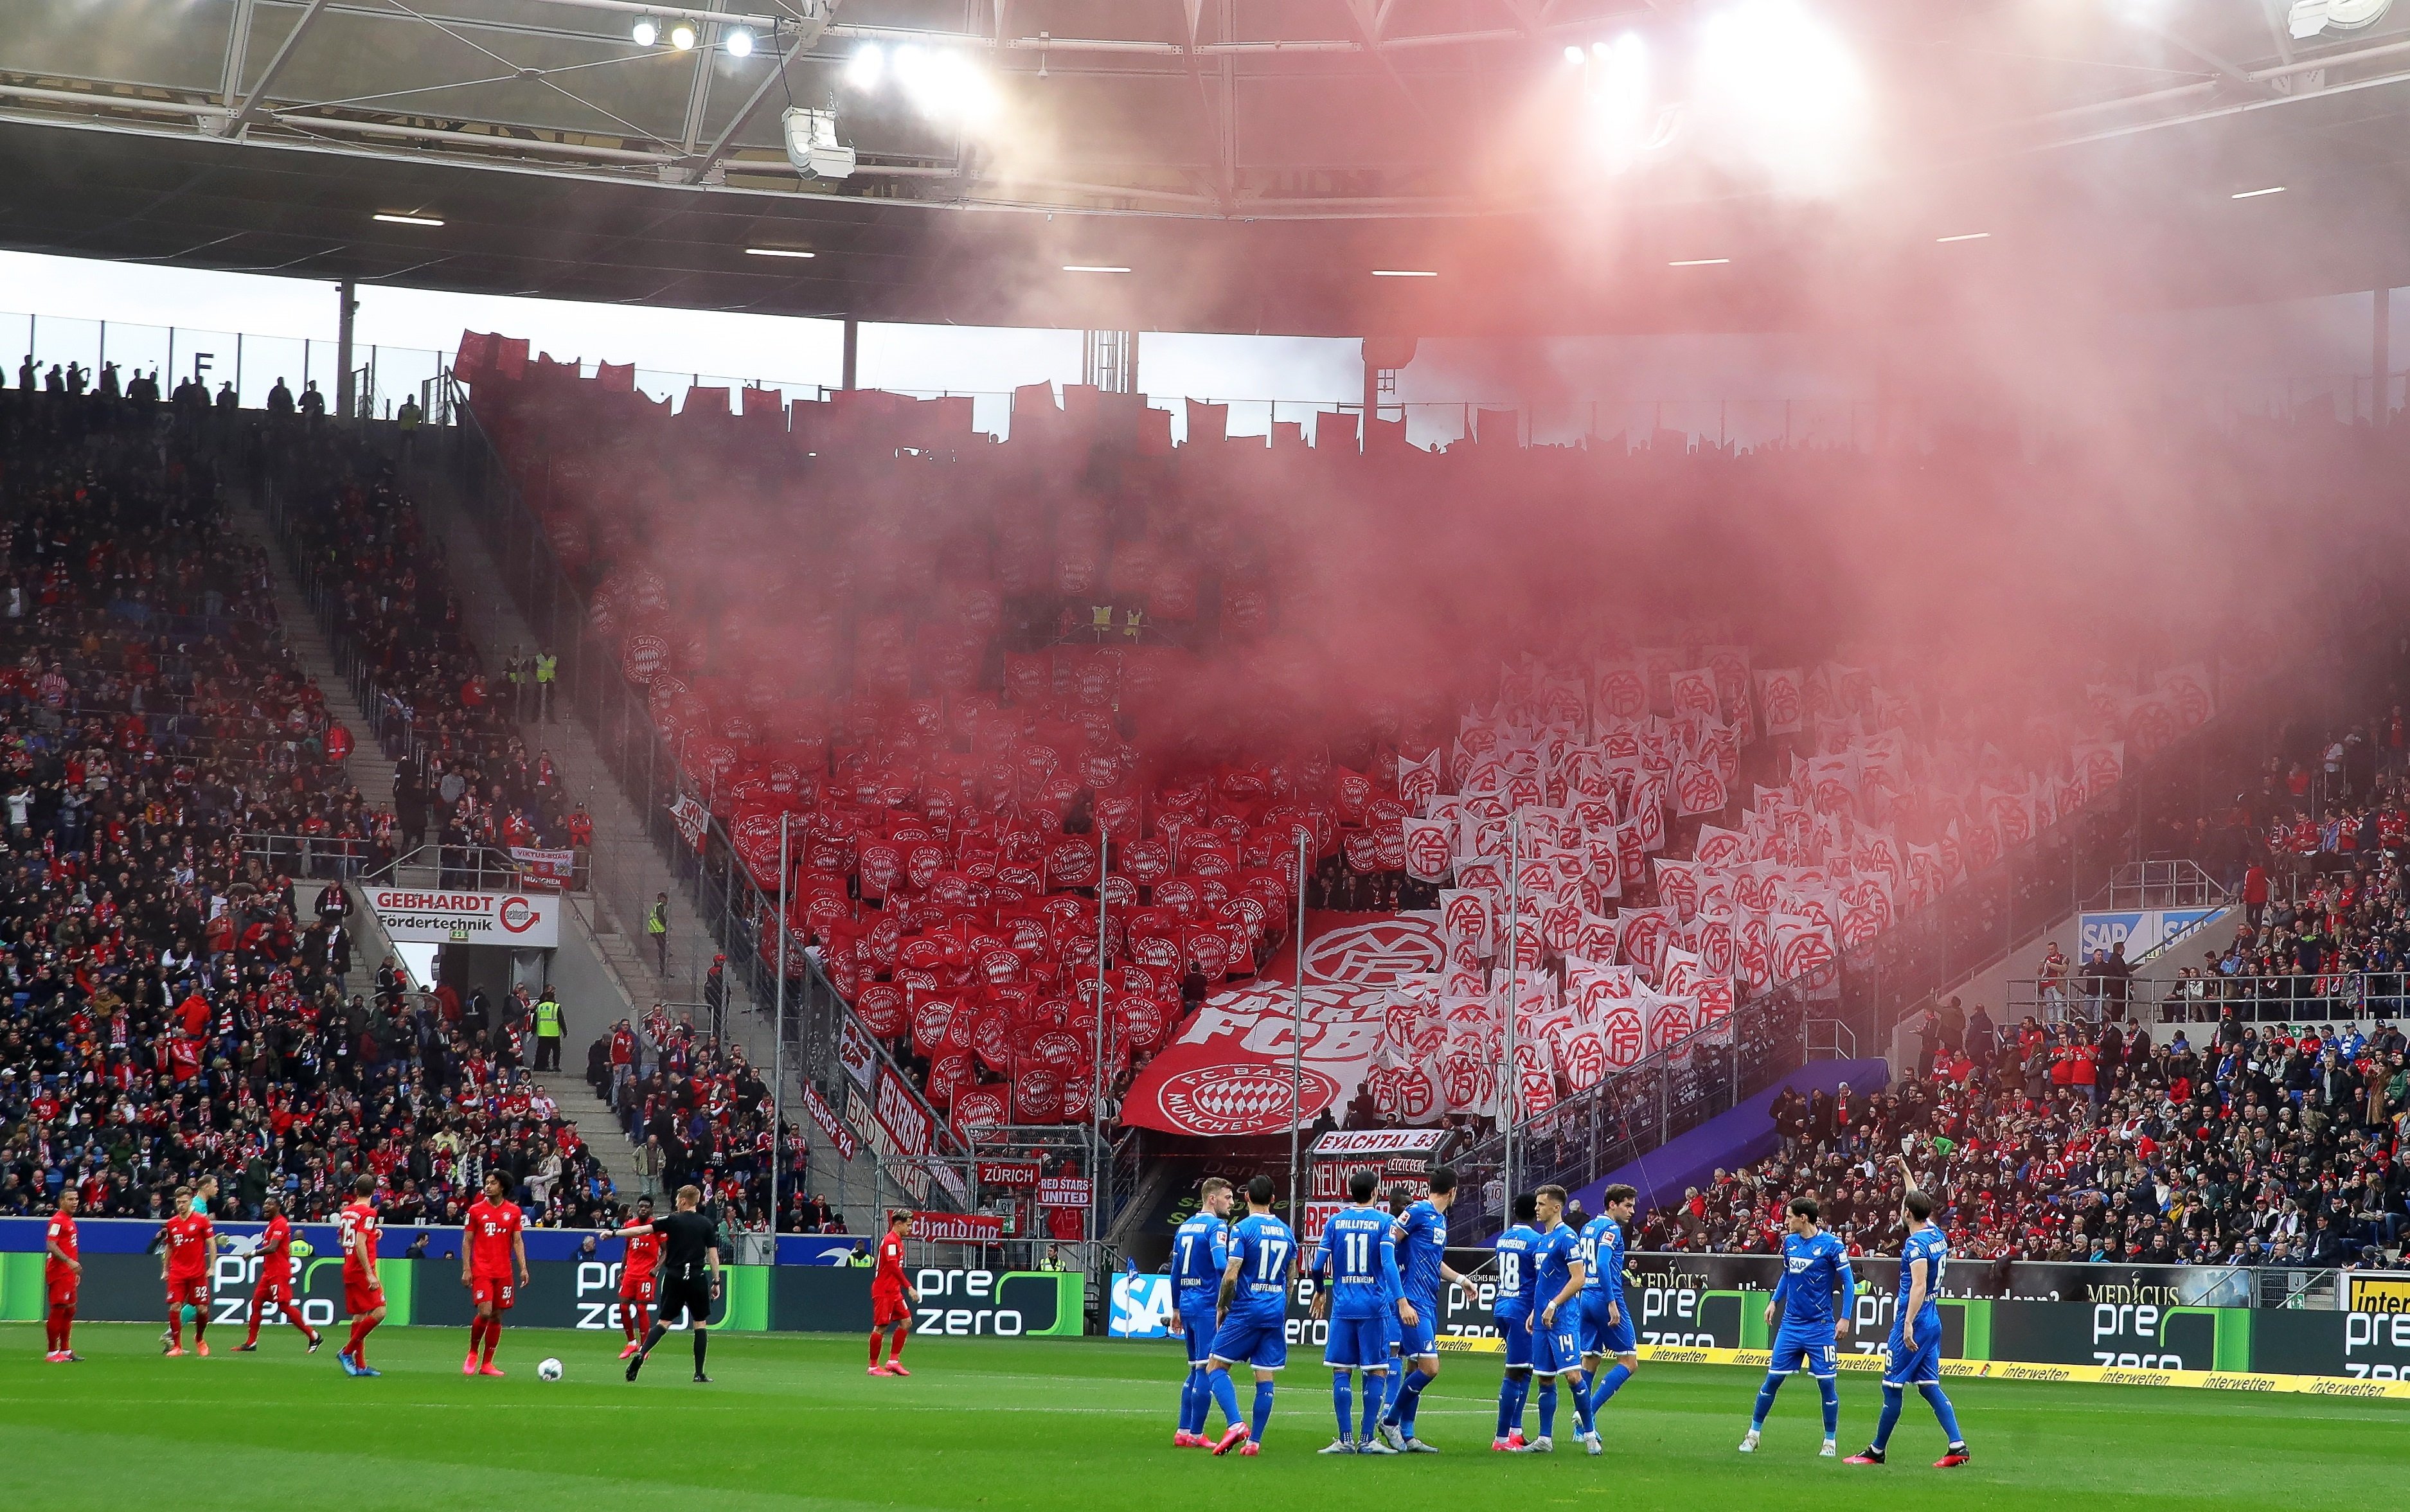 La liga alemana de fútbol tiene planes de reanudar la competición con público